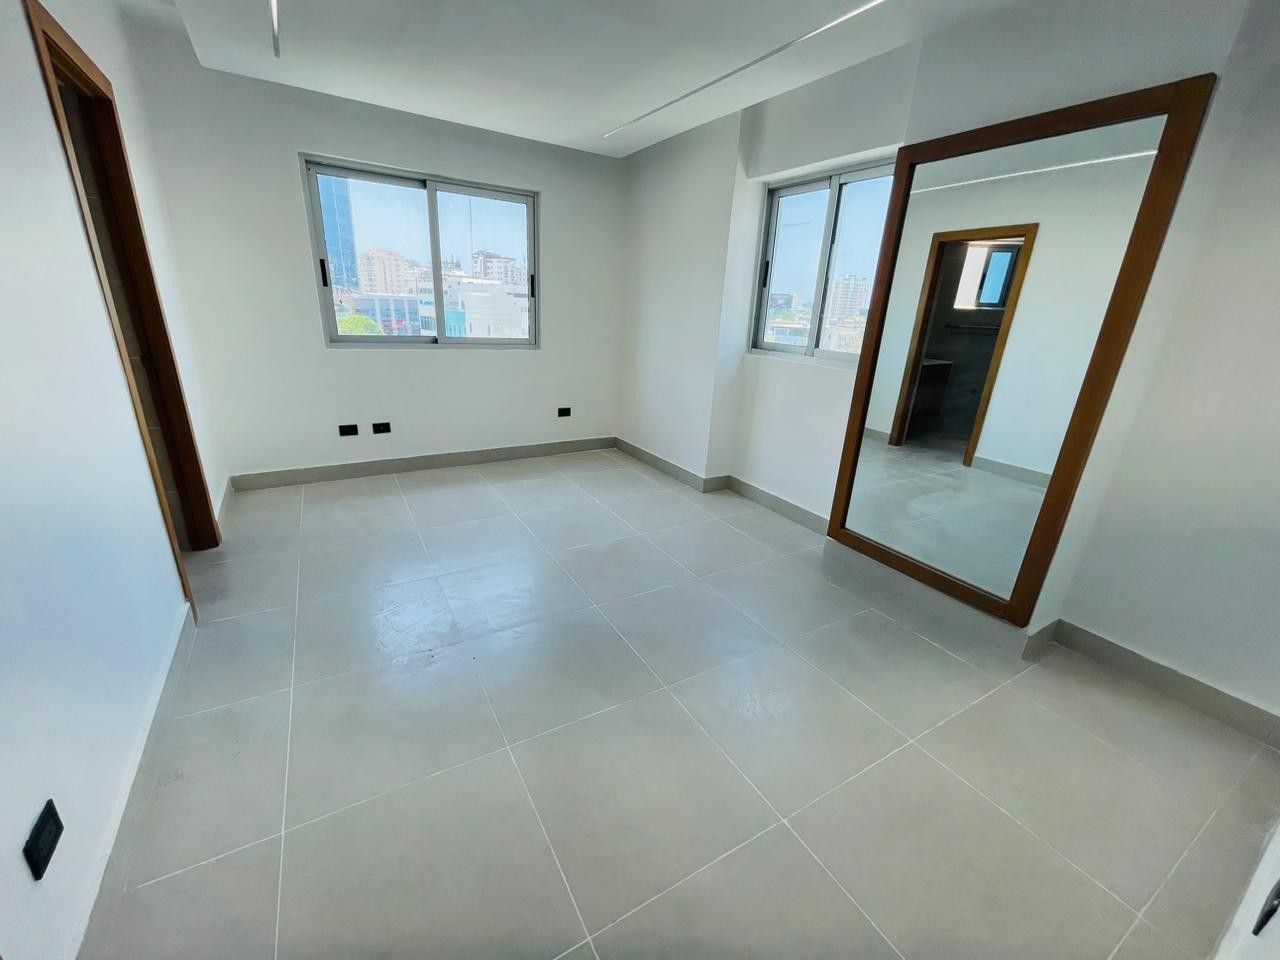 apartamentos - Apartamento con línea blanca de 2 habitaciones ubicado en Piantini 3